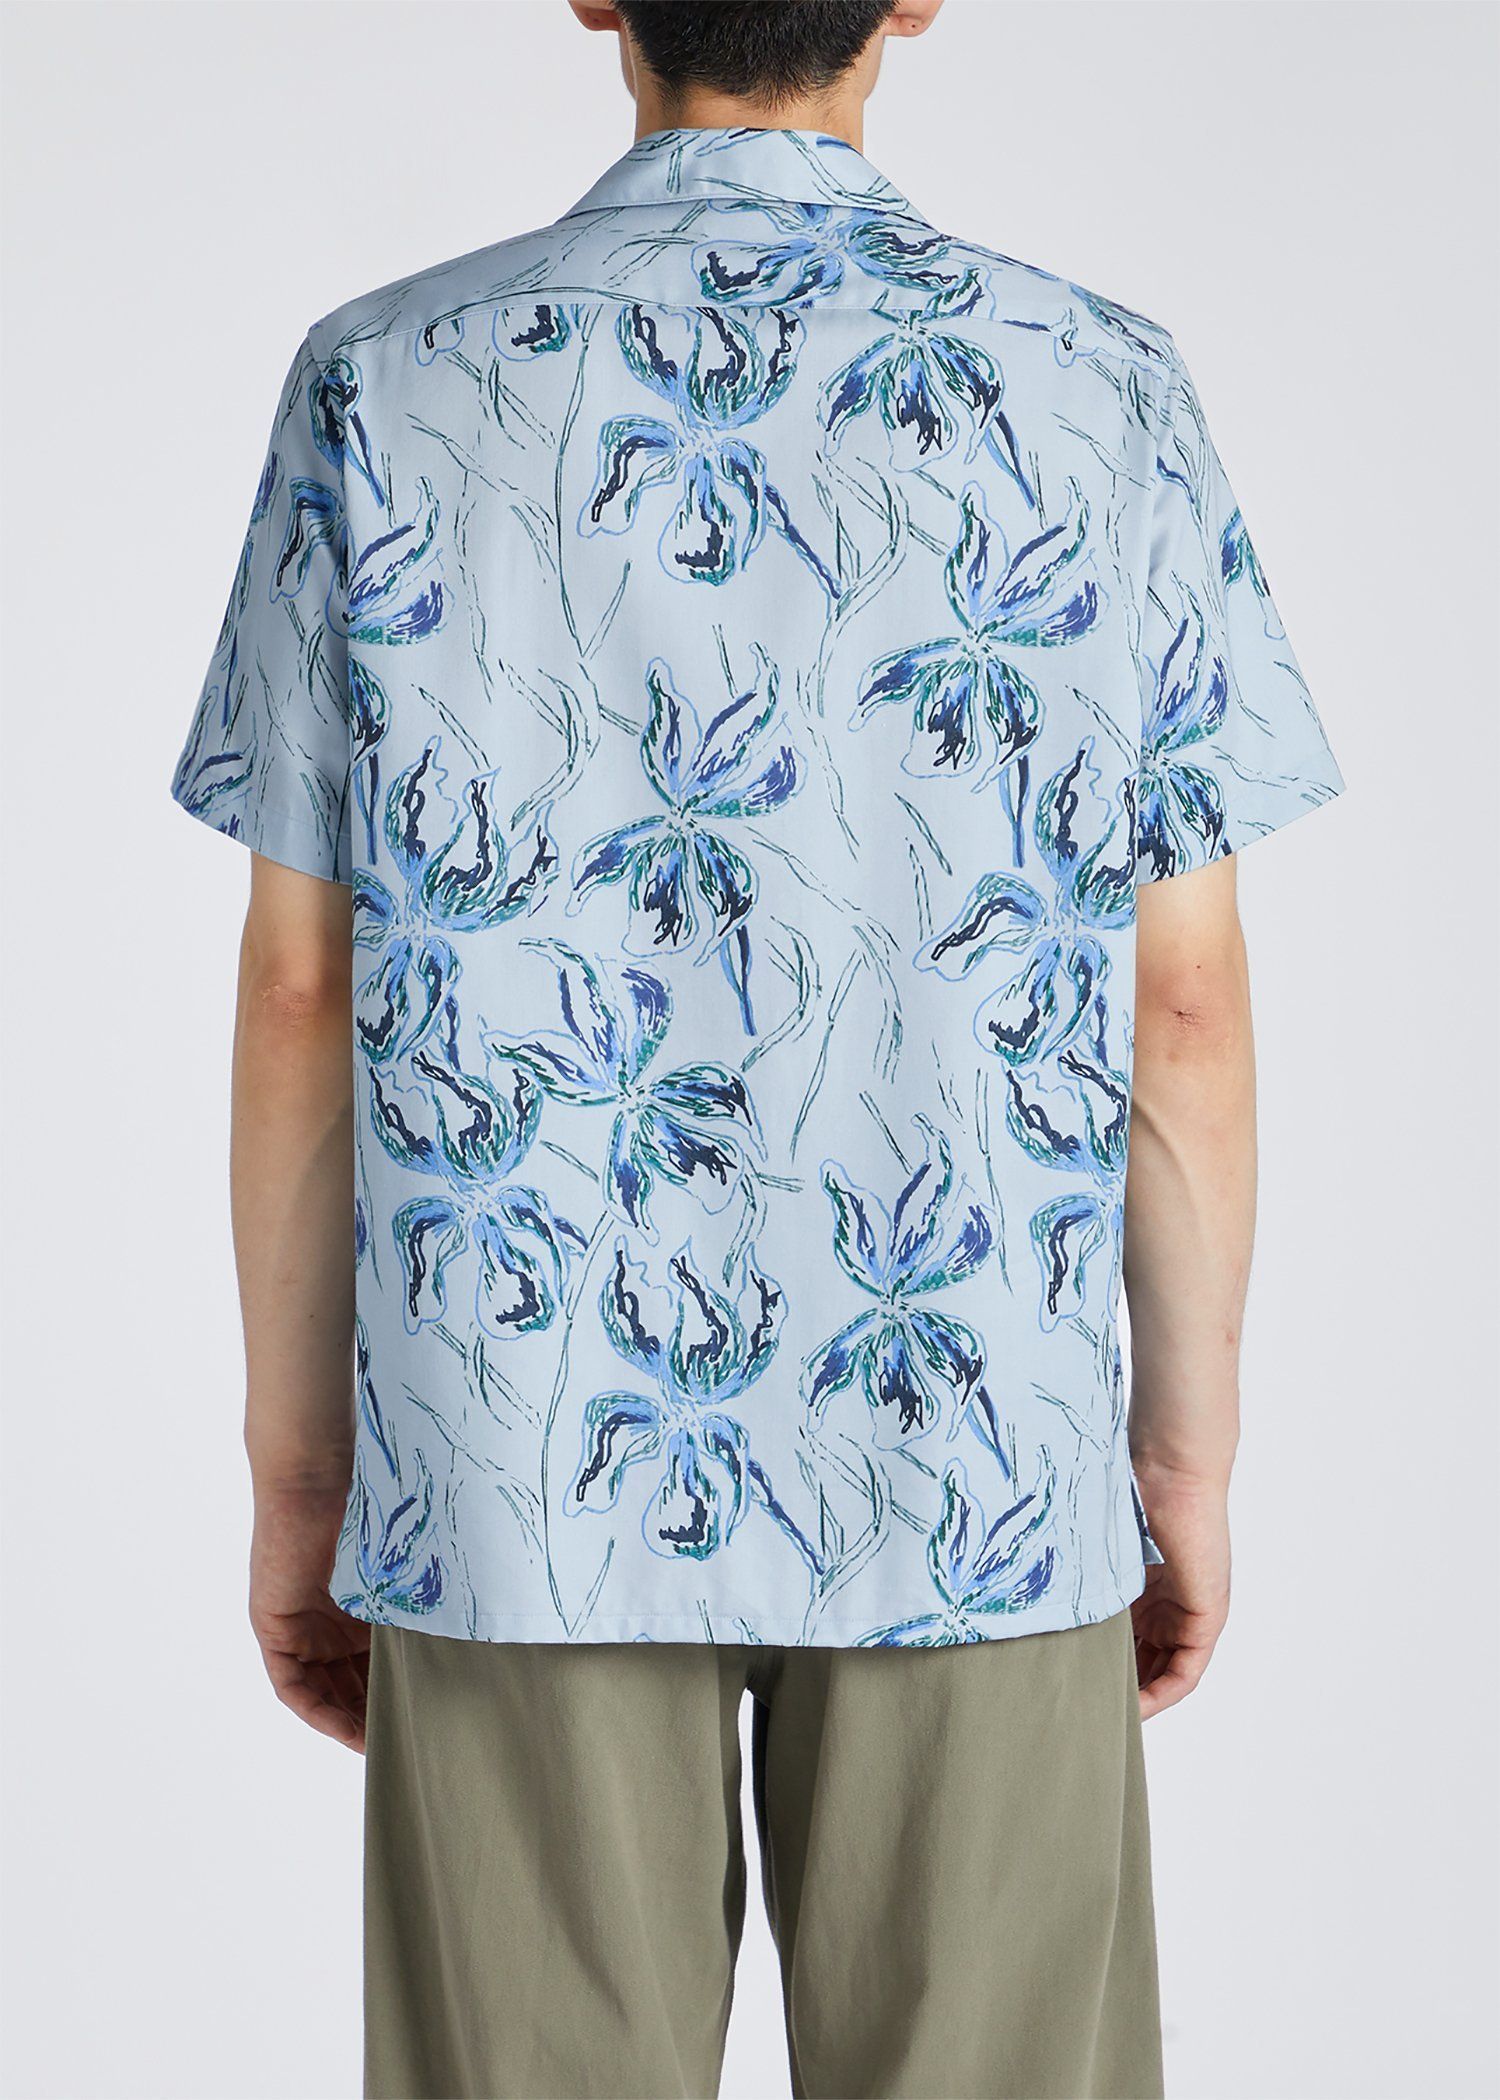 "Gladiolus" オープンカラーシャツ